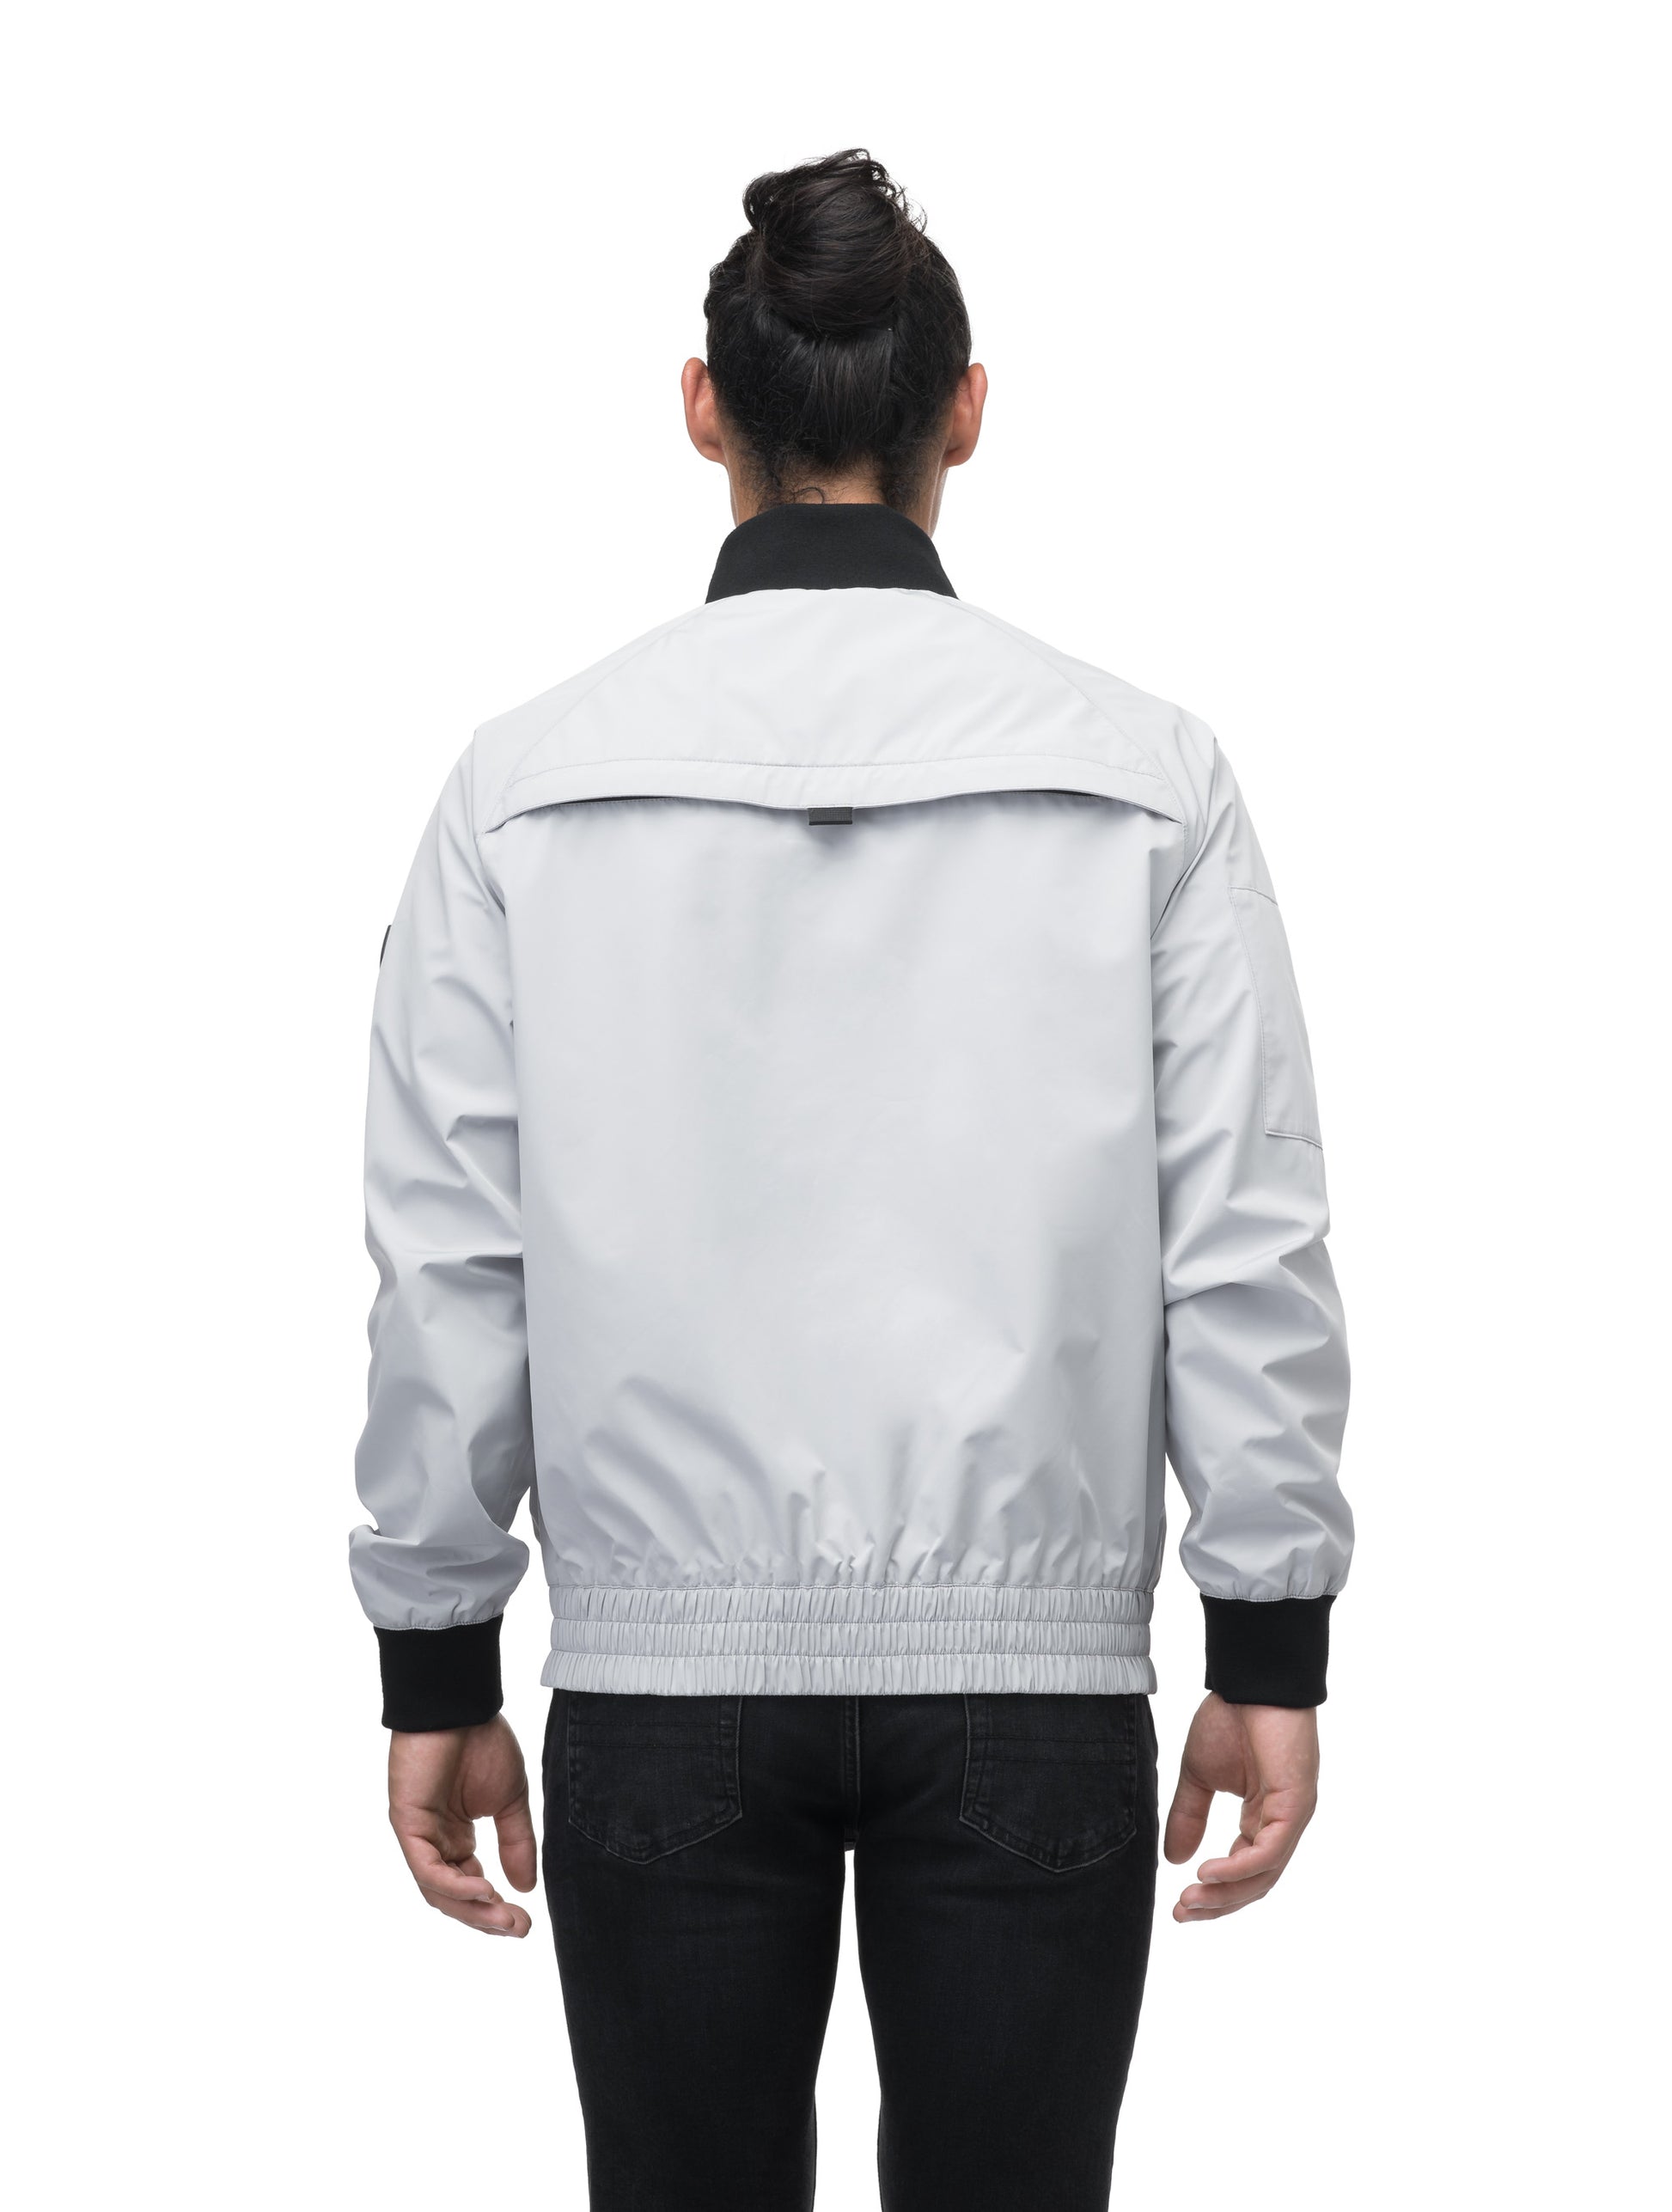 Men's hip length waterproof bomber jacket with 2-way zipper in Light Grey